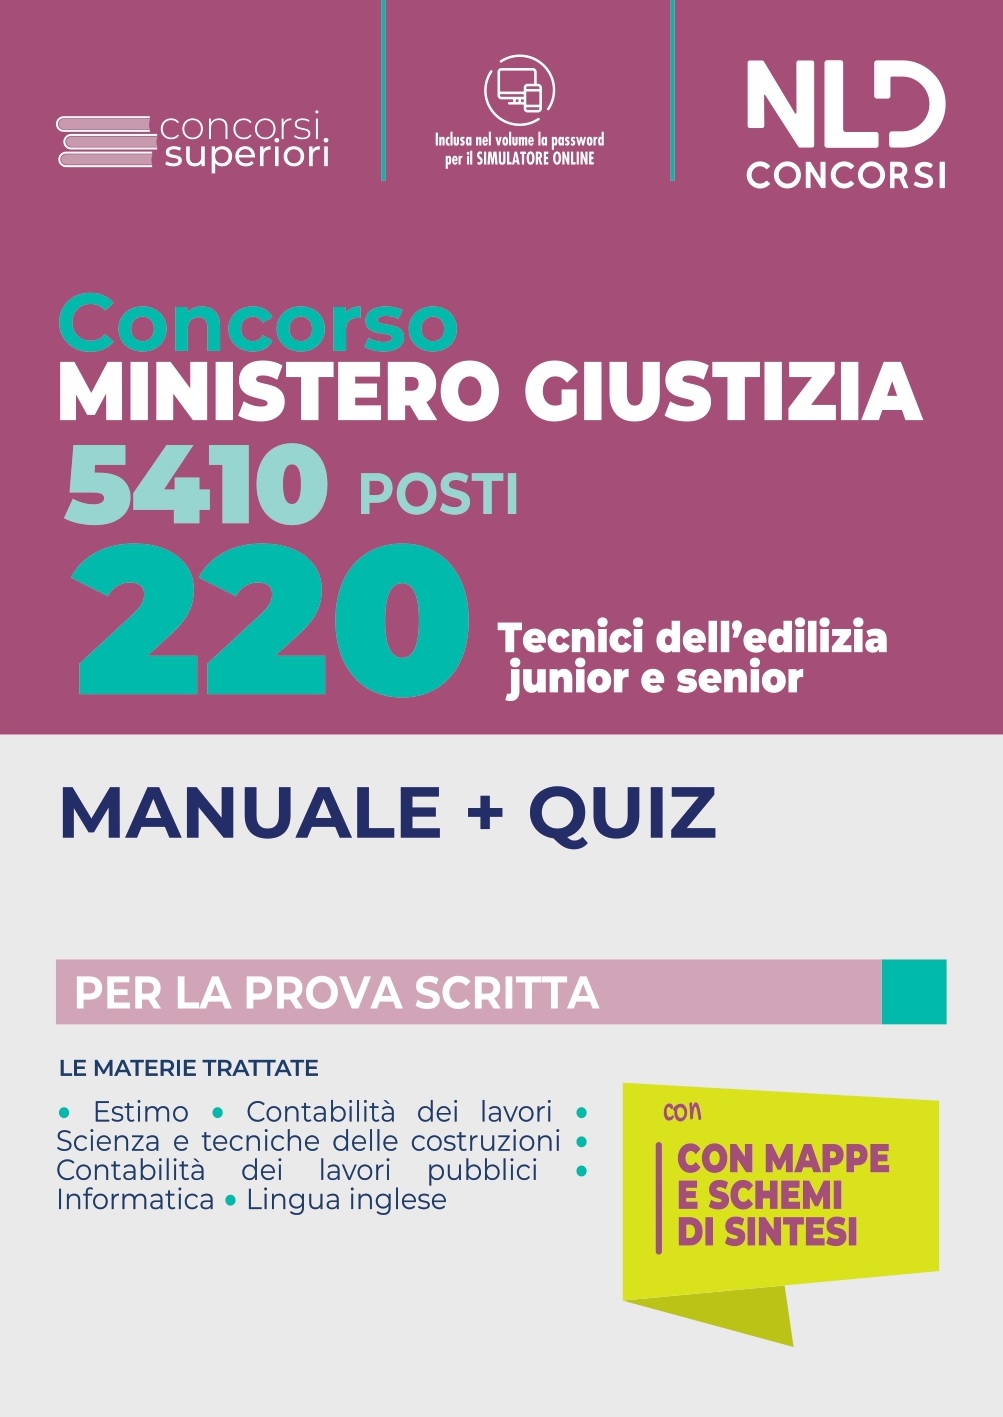 220 Tecnici edilizia junior e senior Ministero Giustizia 2022